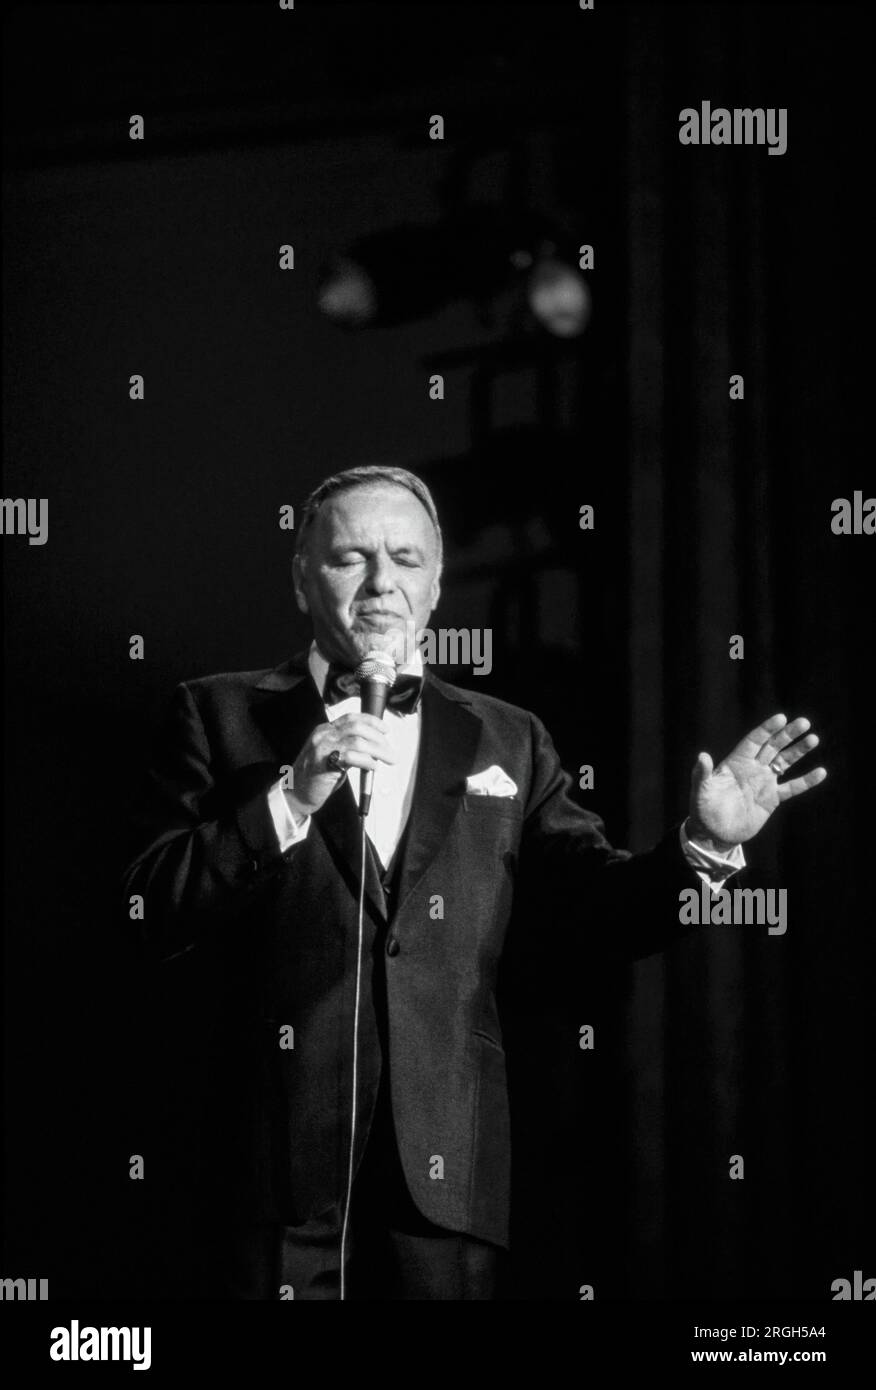 Frank Sinatra in performance, 1982. Fotografia di Bernard Gotfryd . Francis Albert Sinatra è stato un cantante e attore statunitense. Soprannominato il "presidente del Consiglio" e in seguito chiamato "o" Blue Eyes", è considerato uno degli intrattenitori più popolari della metà del XX secolo. Sinatra è tra gli artisti musicali più venduti al mondo con una stima di 150 milioni di vendite di dischi. Nato da immigrati italiani a Hoboken, New Jersey, Sinatra iniziò la sua carriera musicale nell'era dello swing. Foto Stock